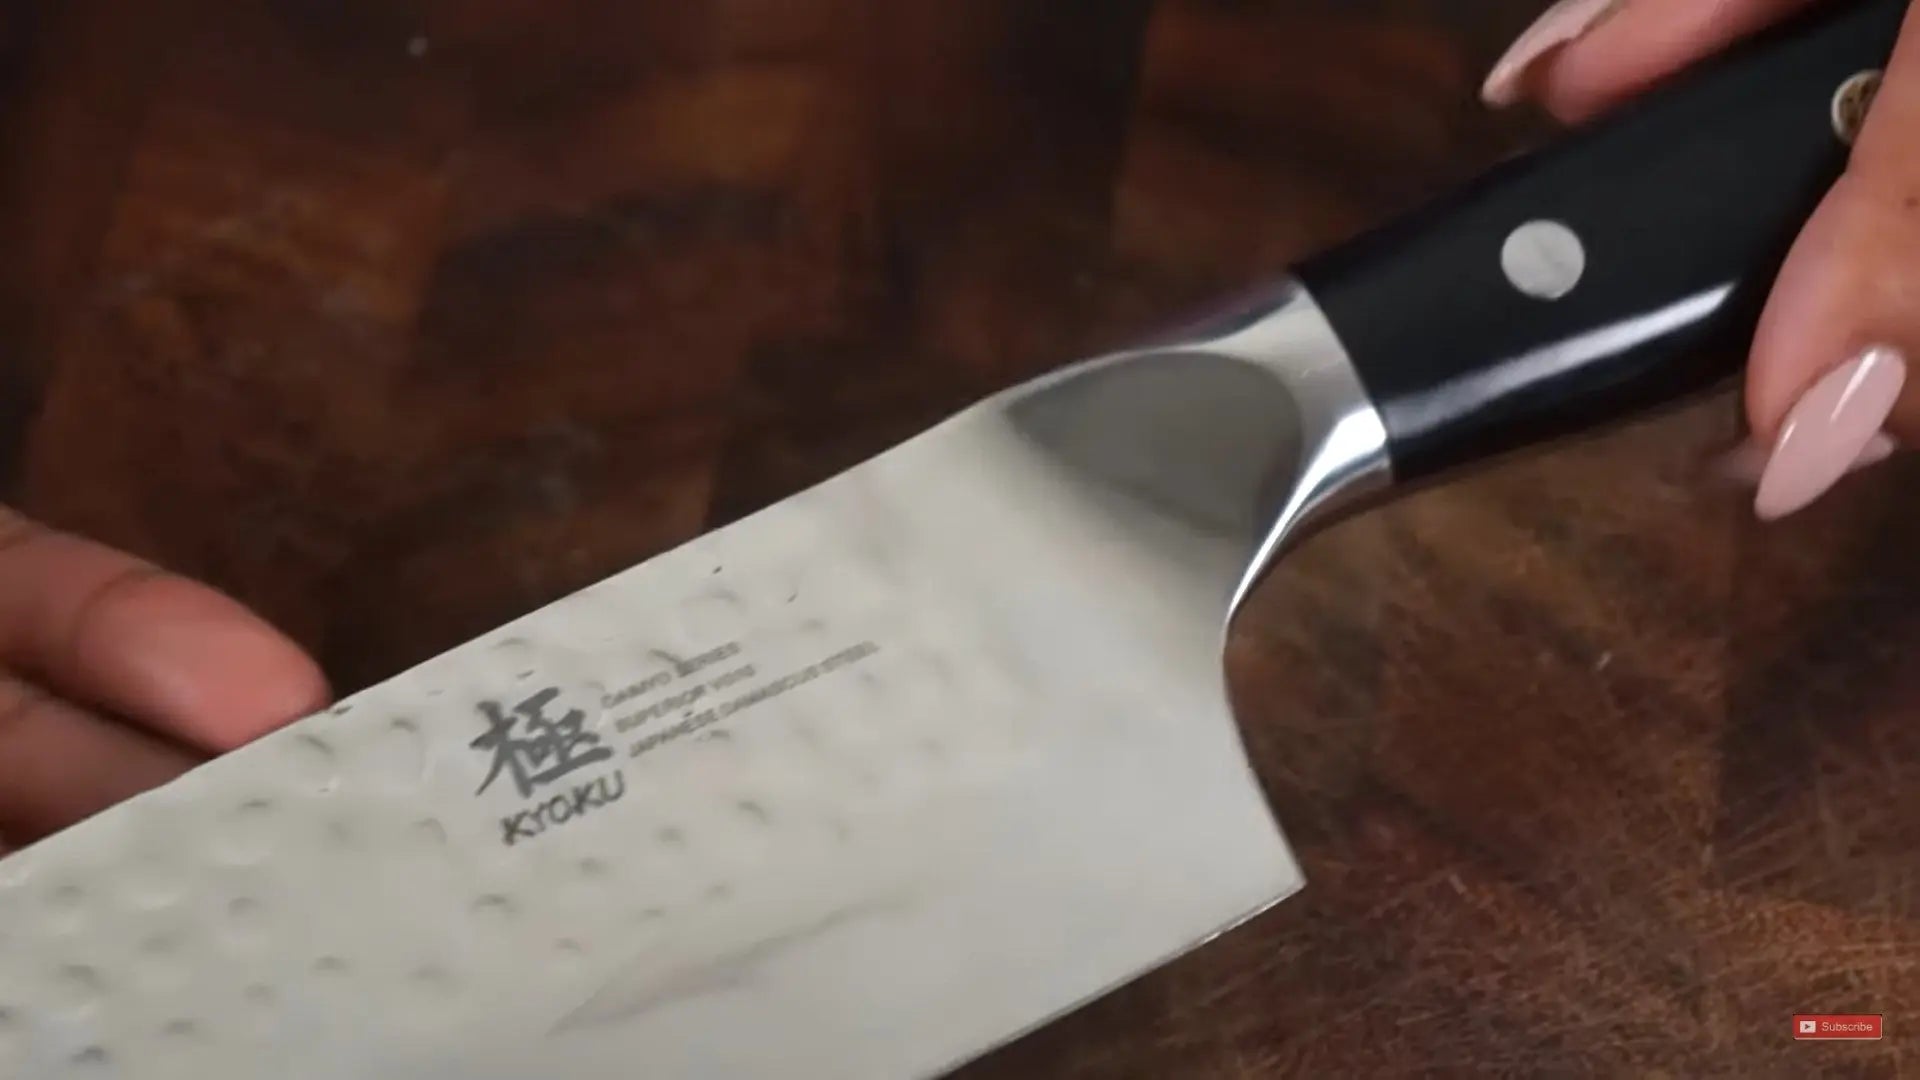 Discover Kyoku Knife with Veggie Rose Kyoku Knives